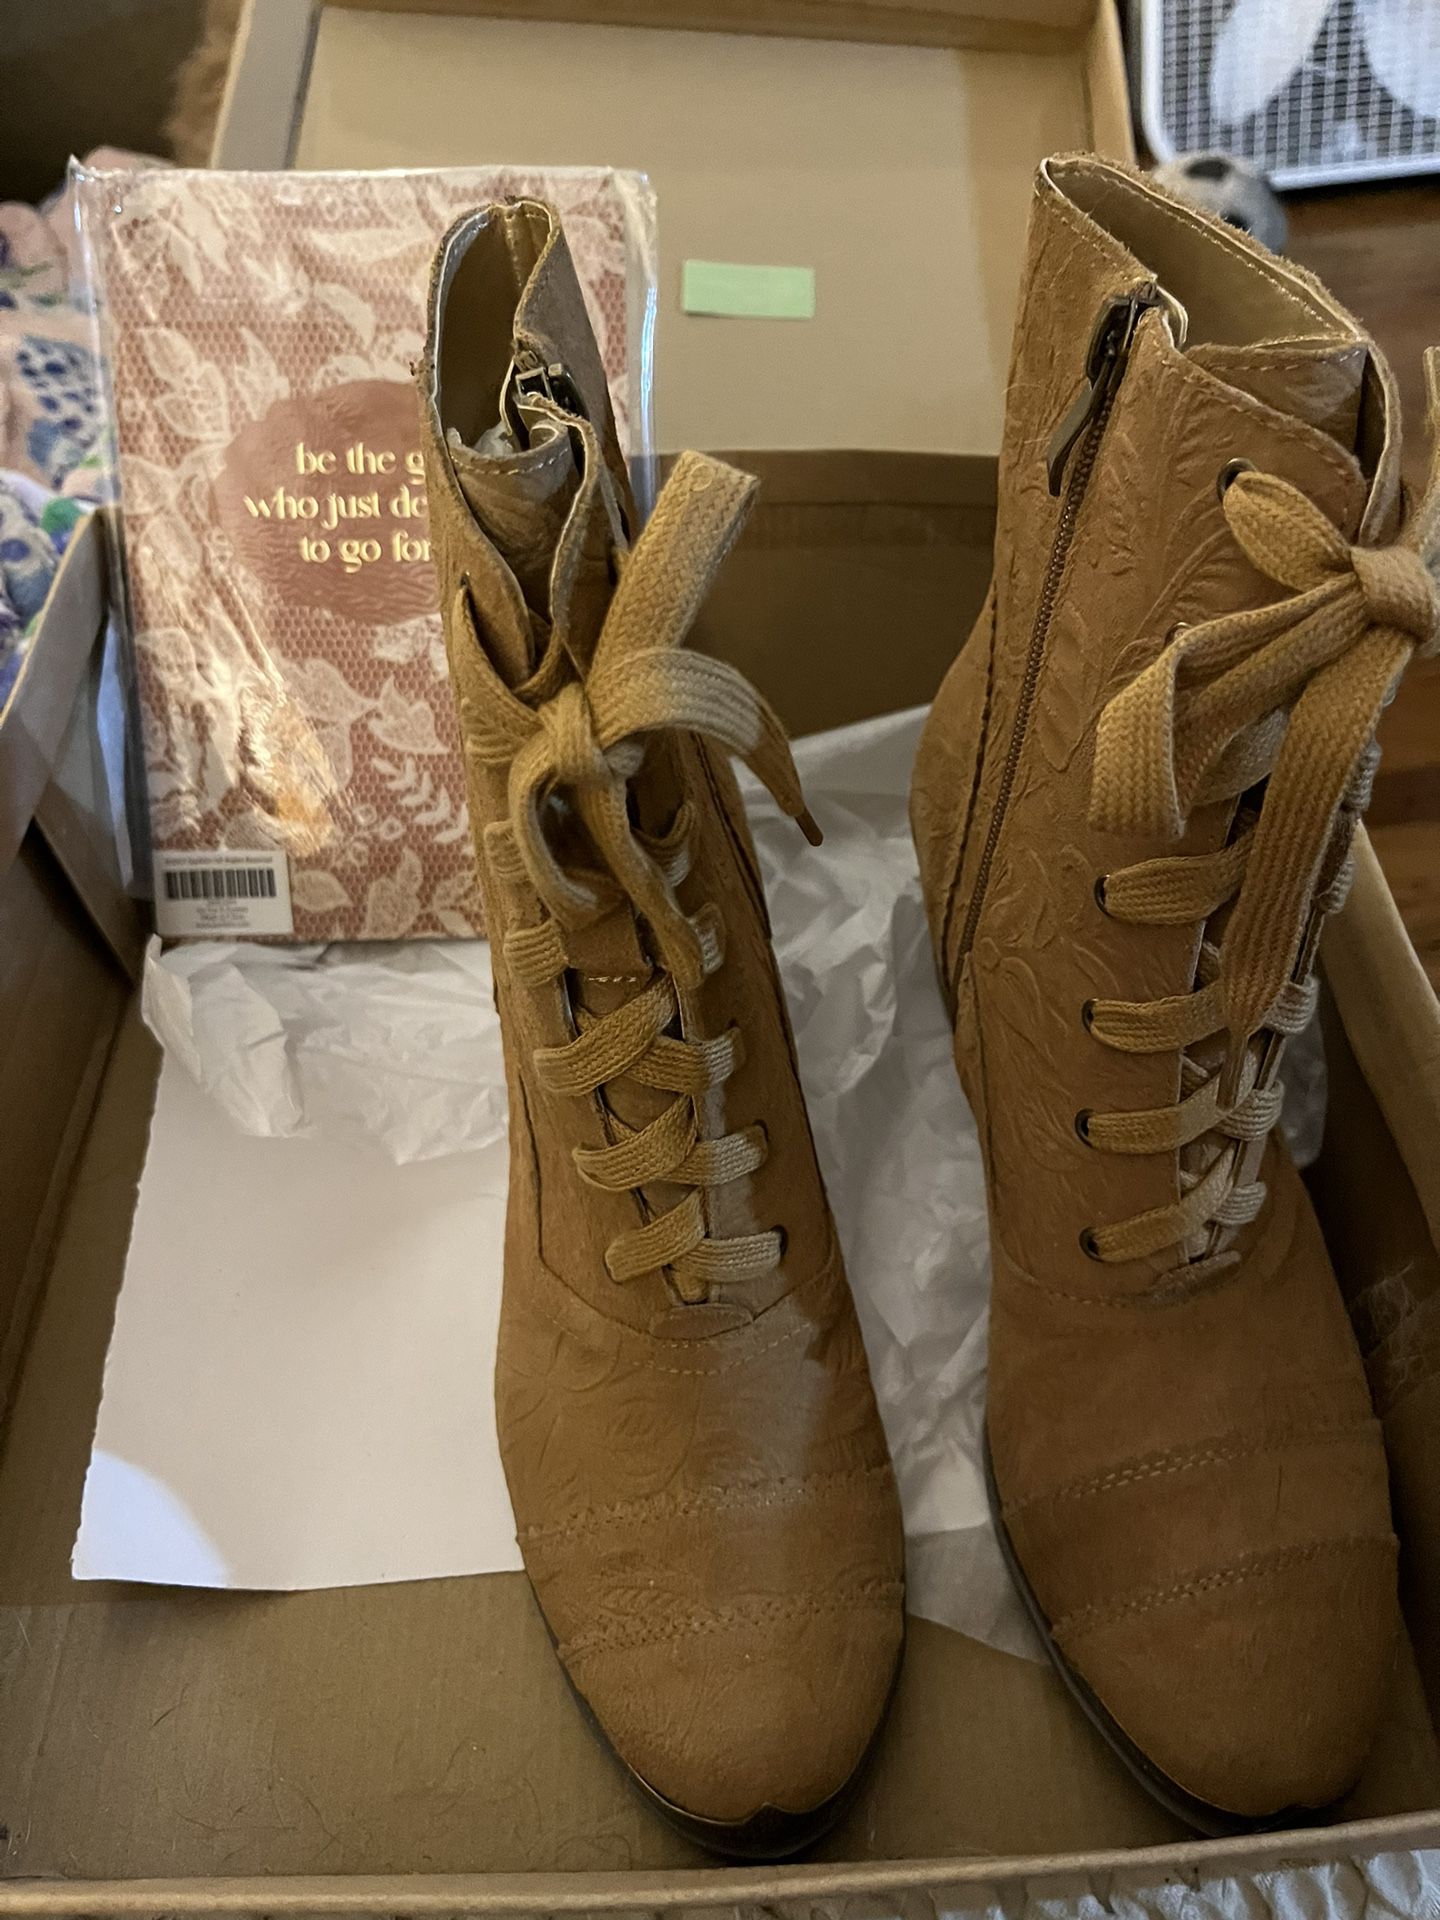 New Joyfolie Women’s Boots $35